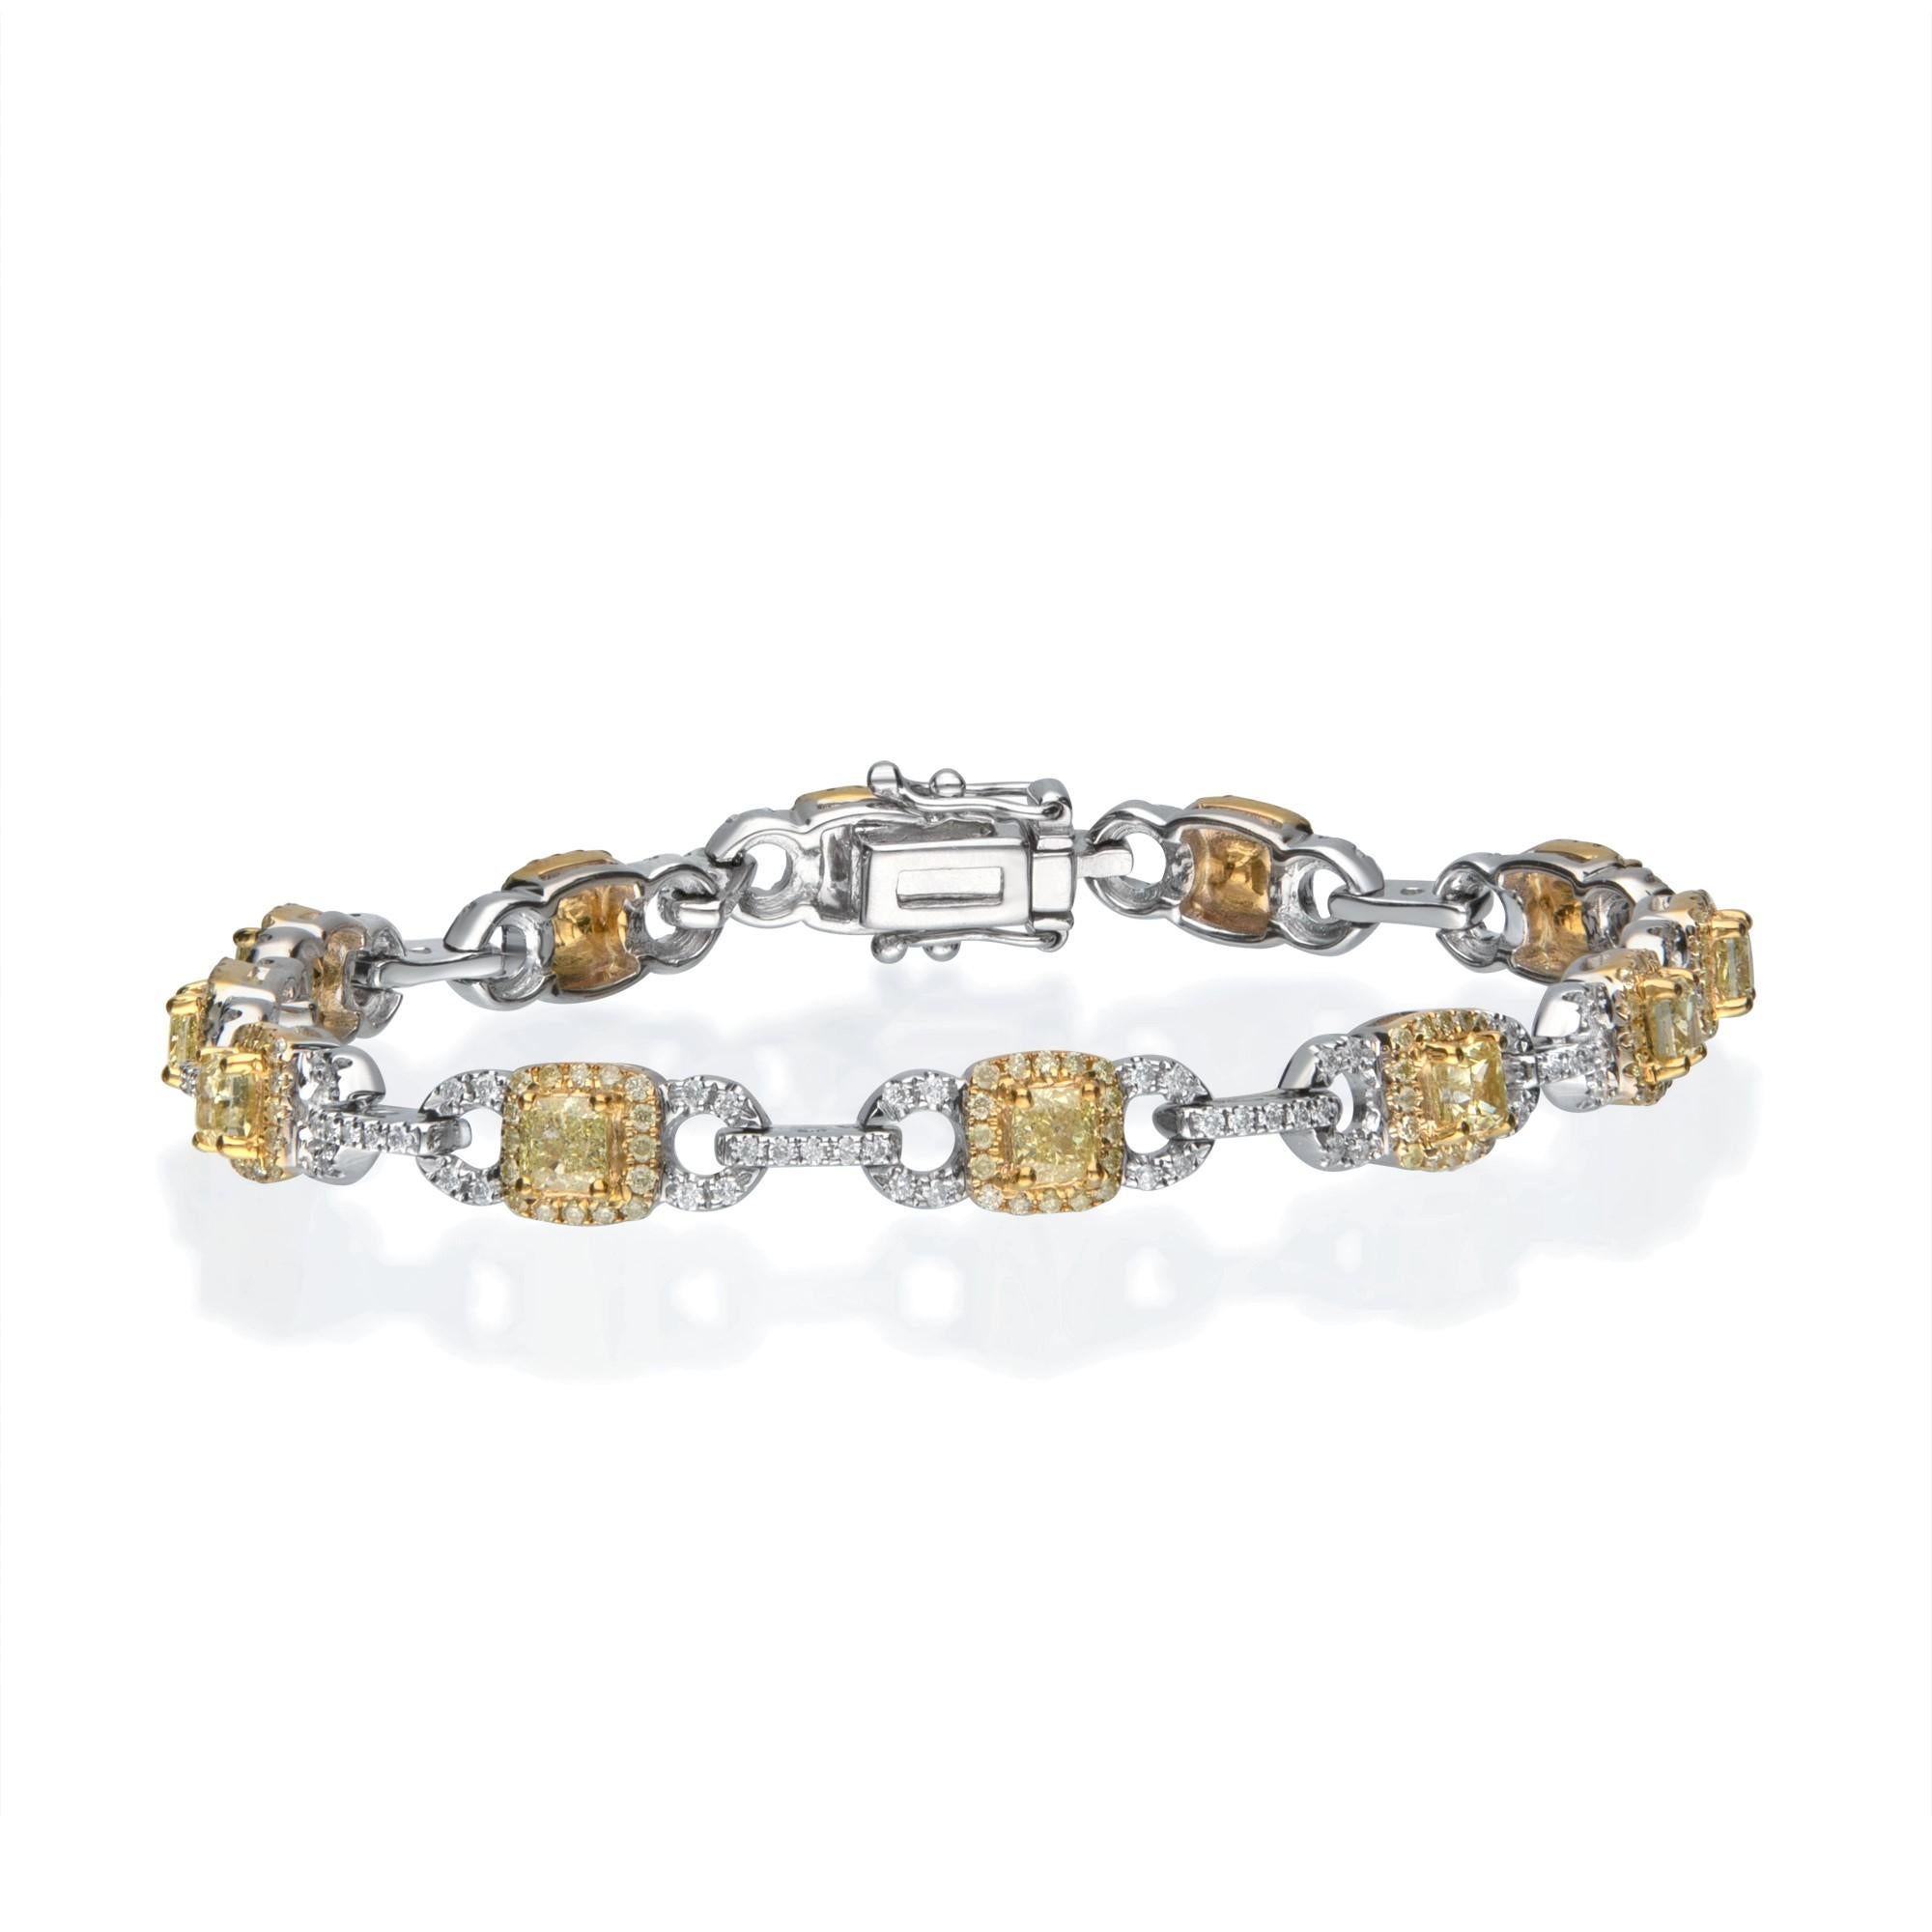 Schmücken Sie sich mit Eleganz mit diesem Armband aus 14-karätigem, zweifarbigem Gold von Gin & Grace. Dieses Armband besteht aus weißen Diamanten im Rundschliff (348 Stück) mit 1,30 Karat und gelben Diamanten im Mischschliff (12 Stück) mit 1,86